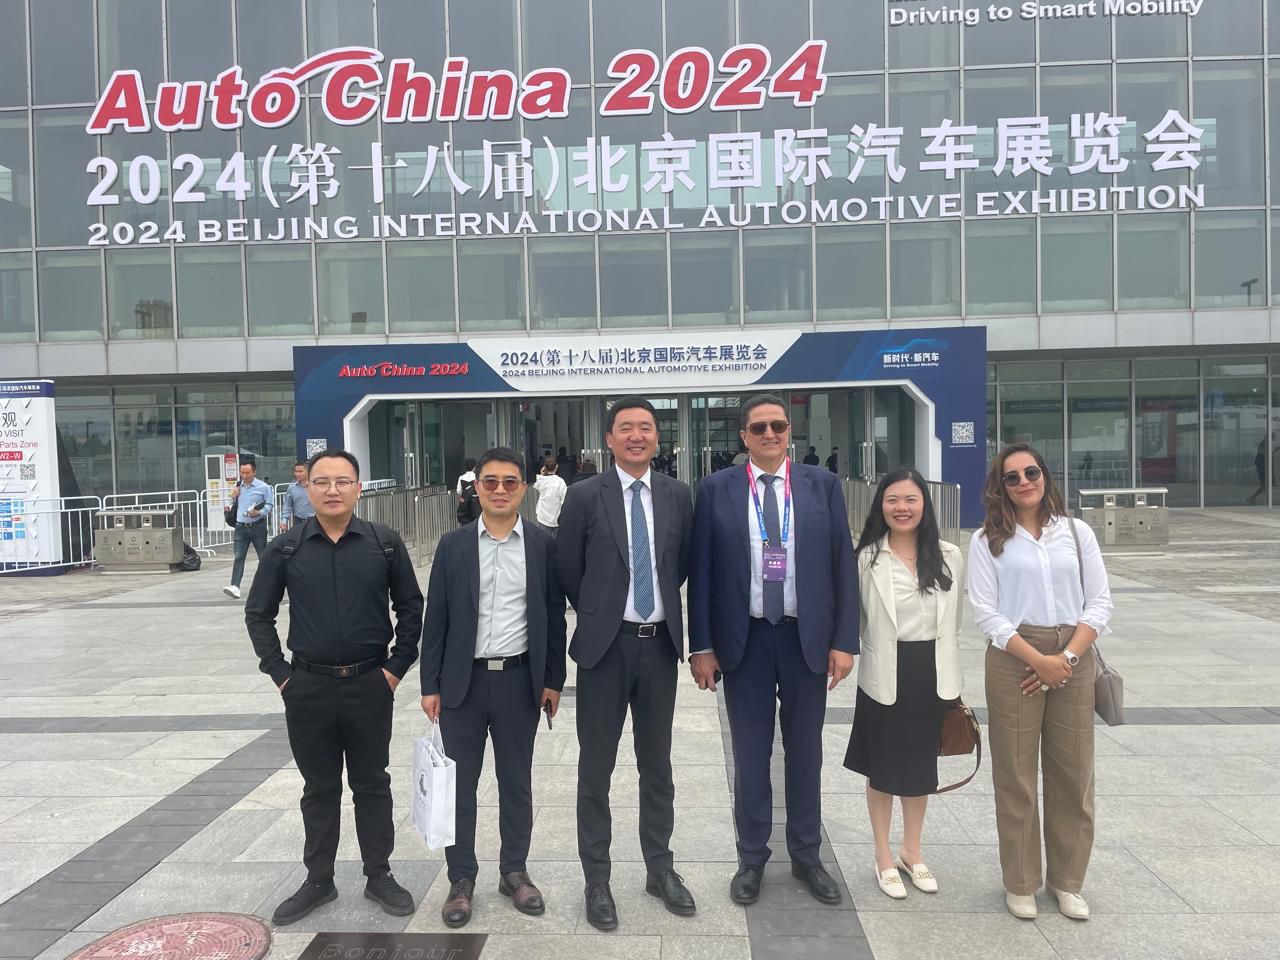 السيد عمر مورو يشارك في فعاليات Auto China 2024 في بيكين: نحو التنقل الذكي”